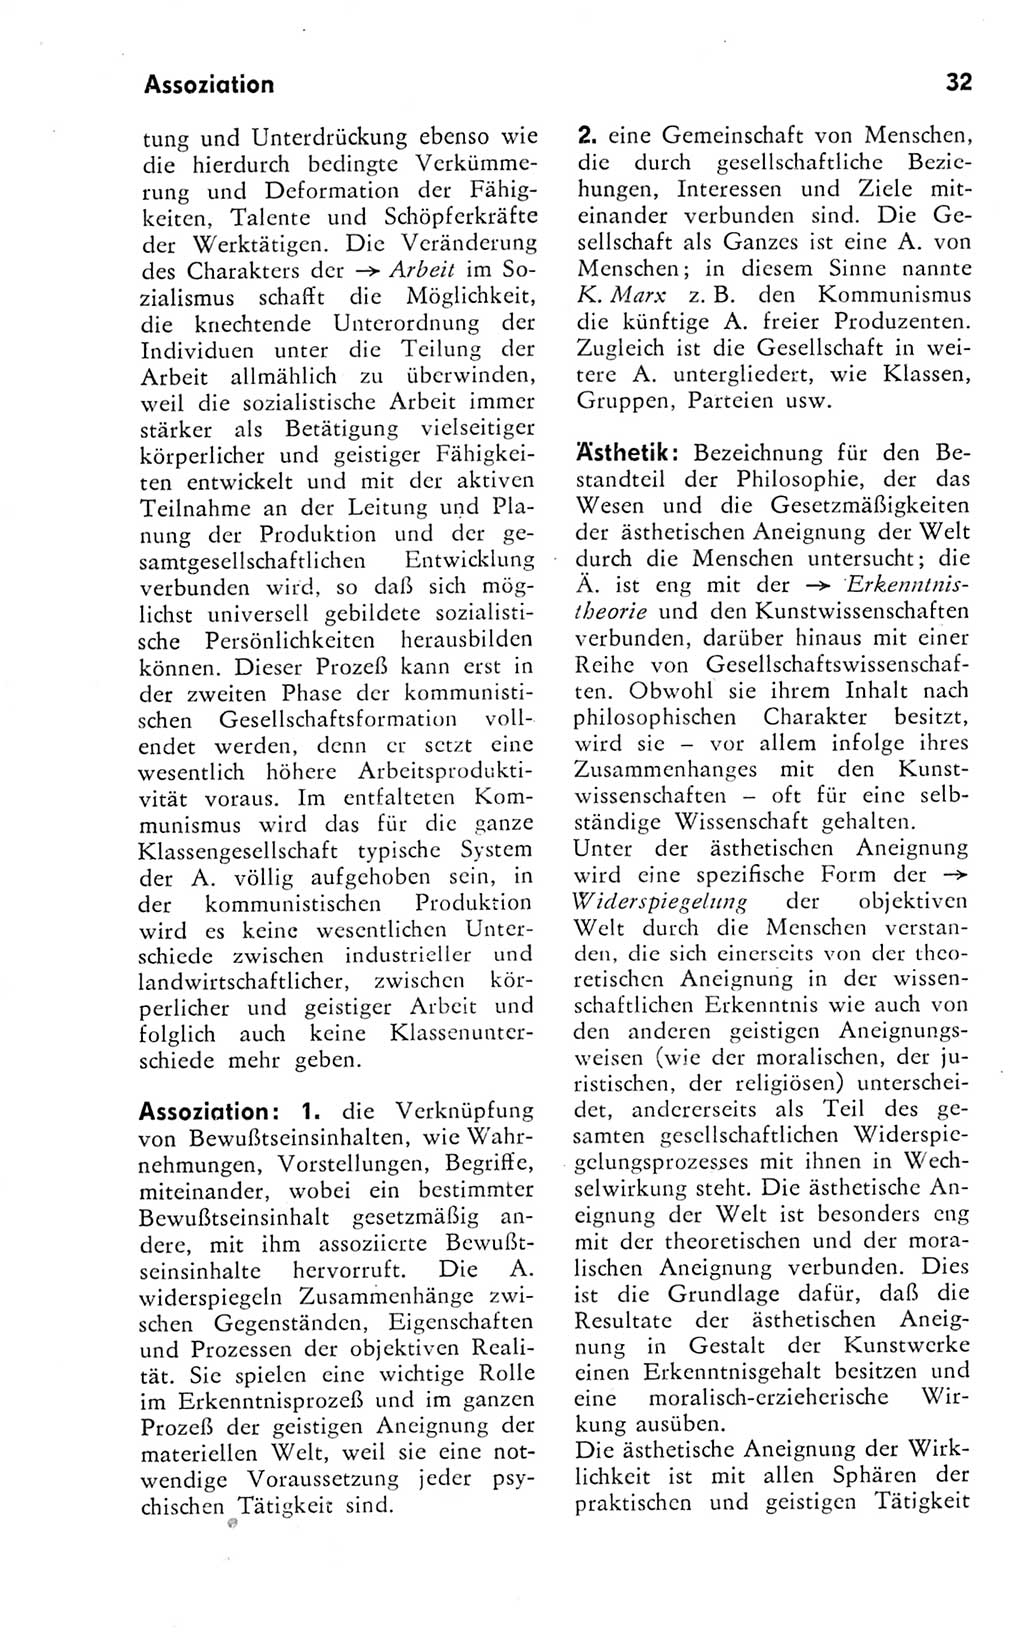 Kleines Wörterbuch der marxistisch-leninistischen Philosophie [Deutsche Demokratische Republik (DDR)] 1974, Seite 32 (Kl. Wb. ML Phil. DDR 1974, S. 32)